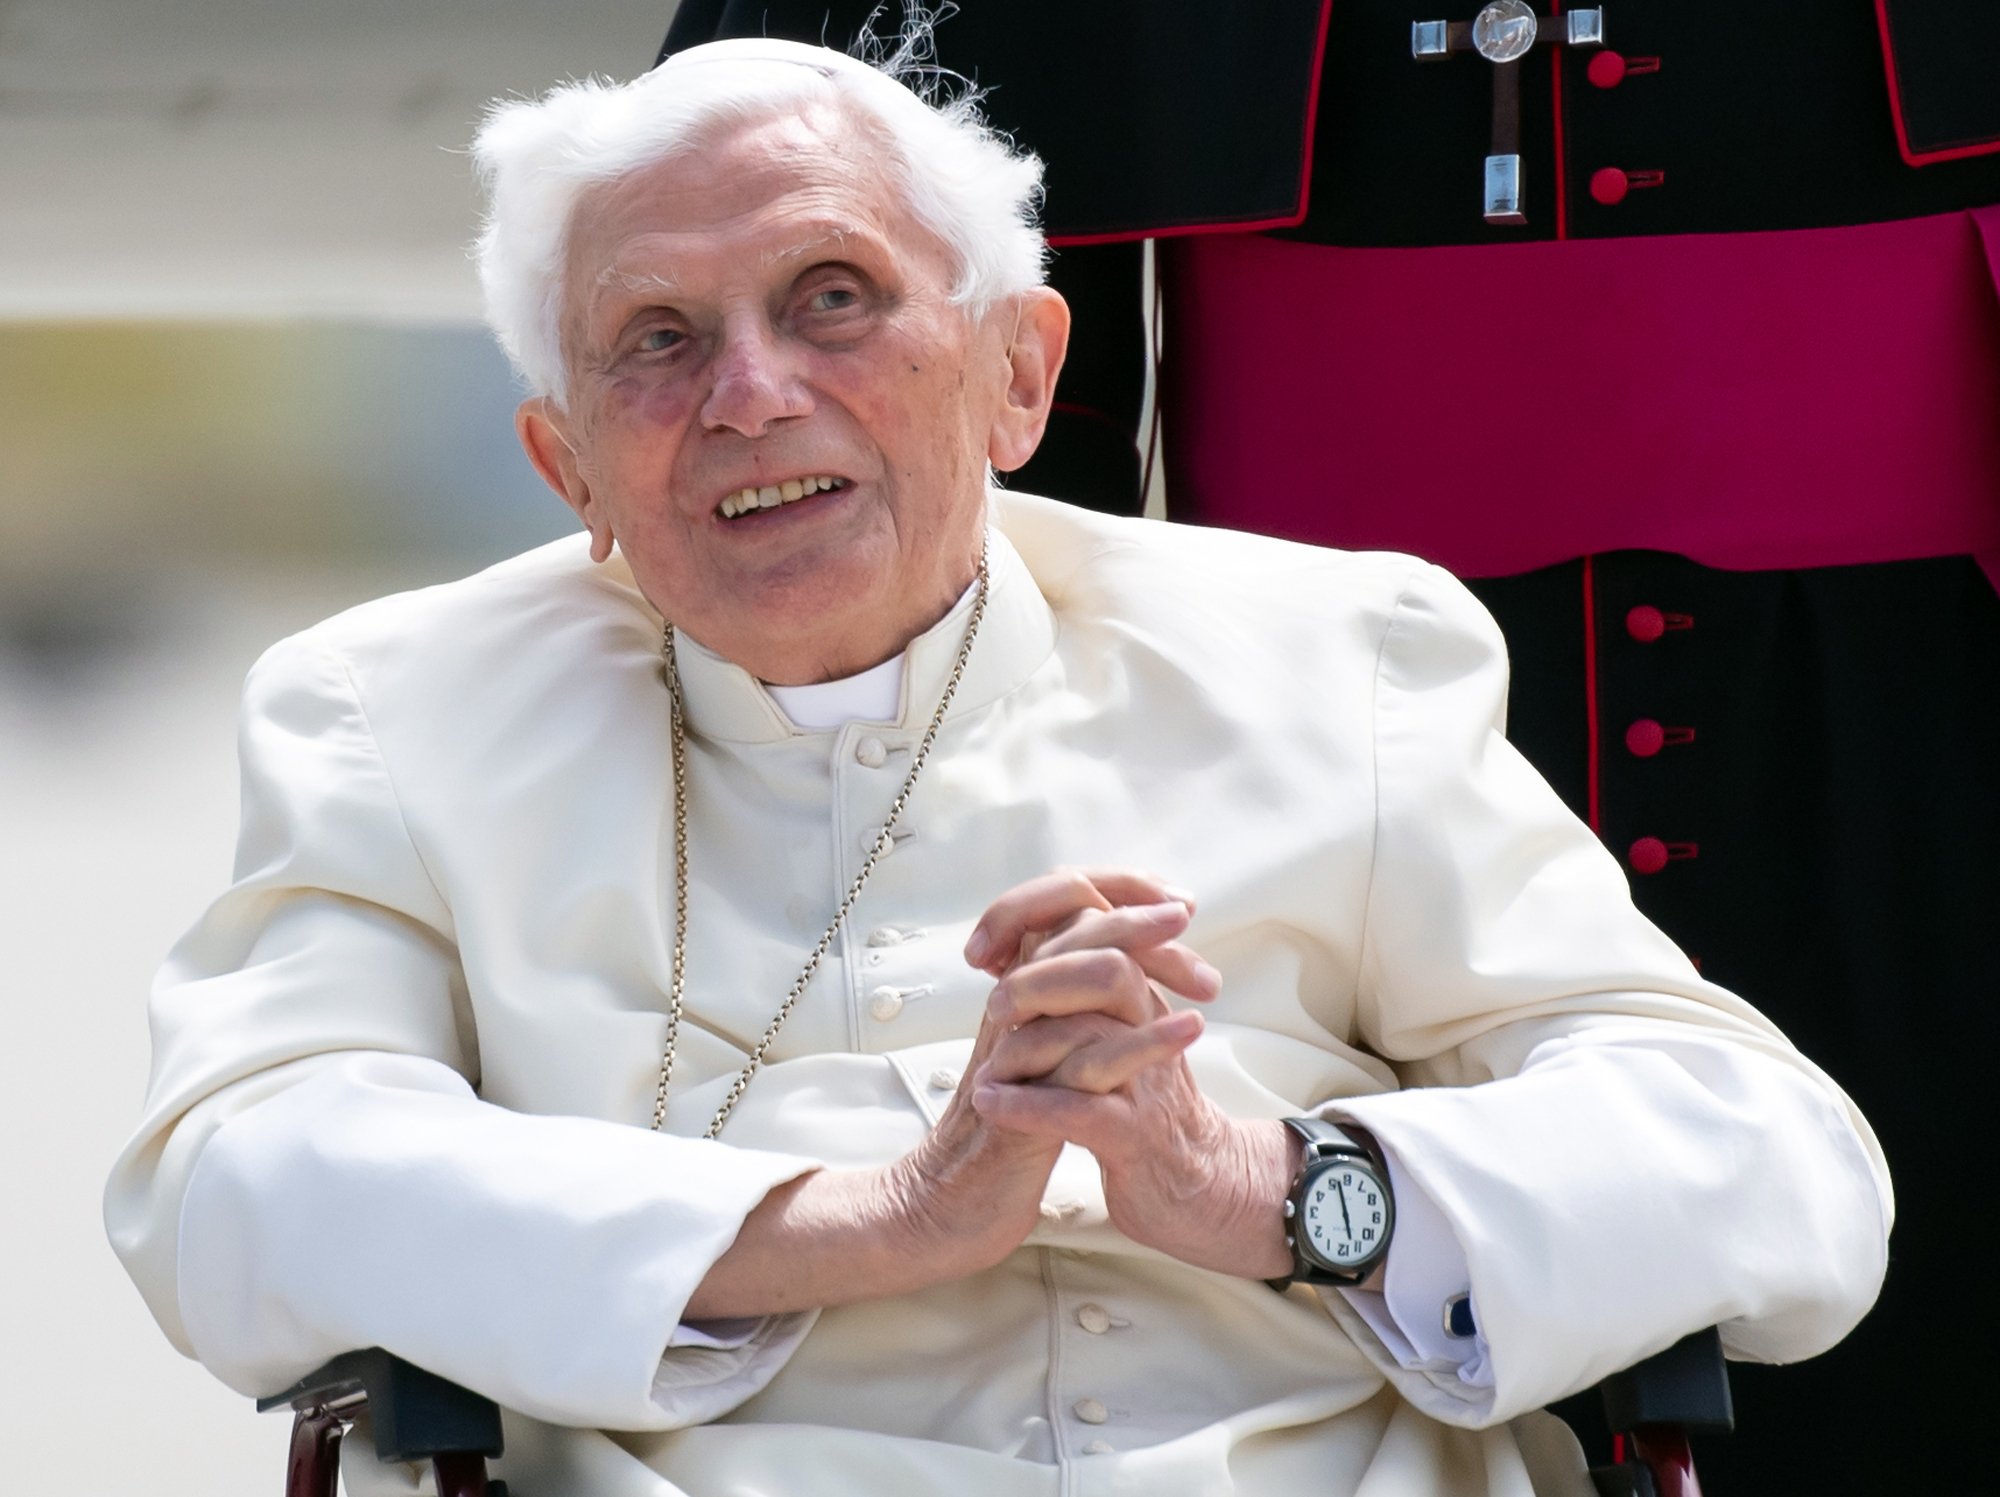 Muere el papa emérito Benedicto XVI a los 95 años